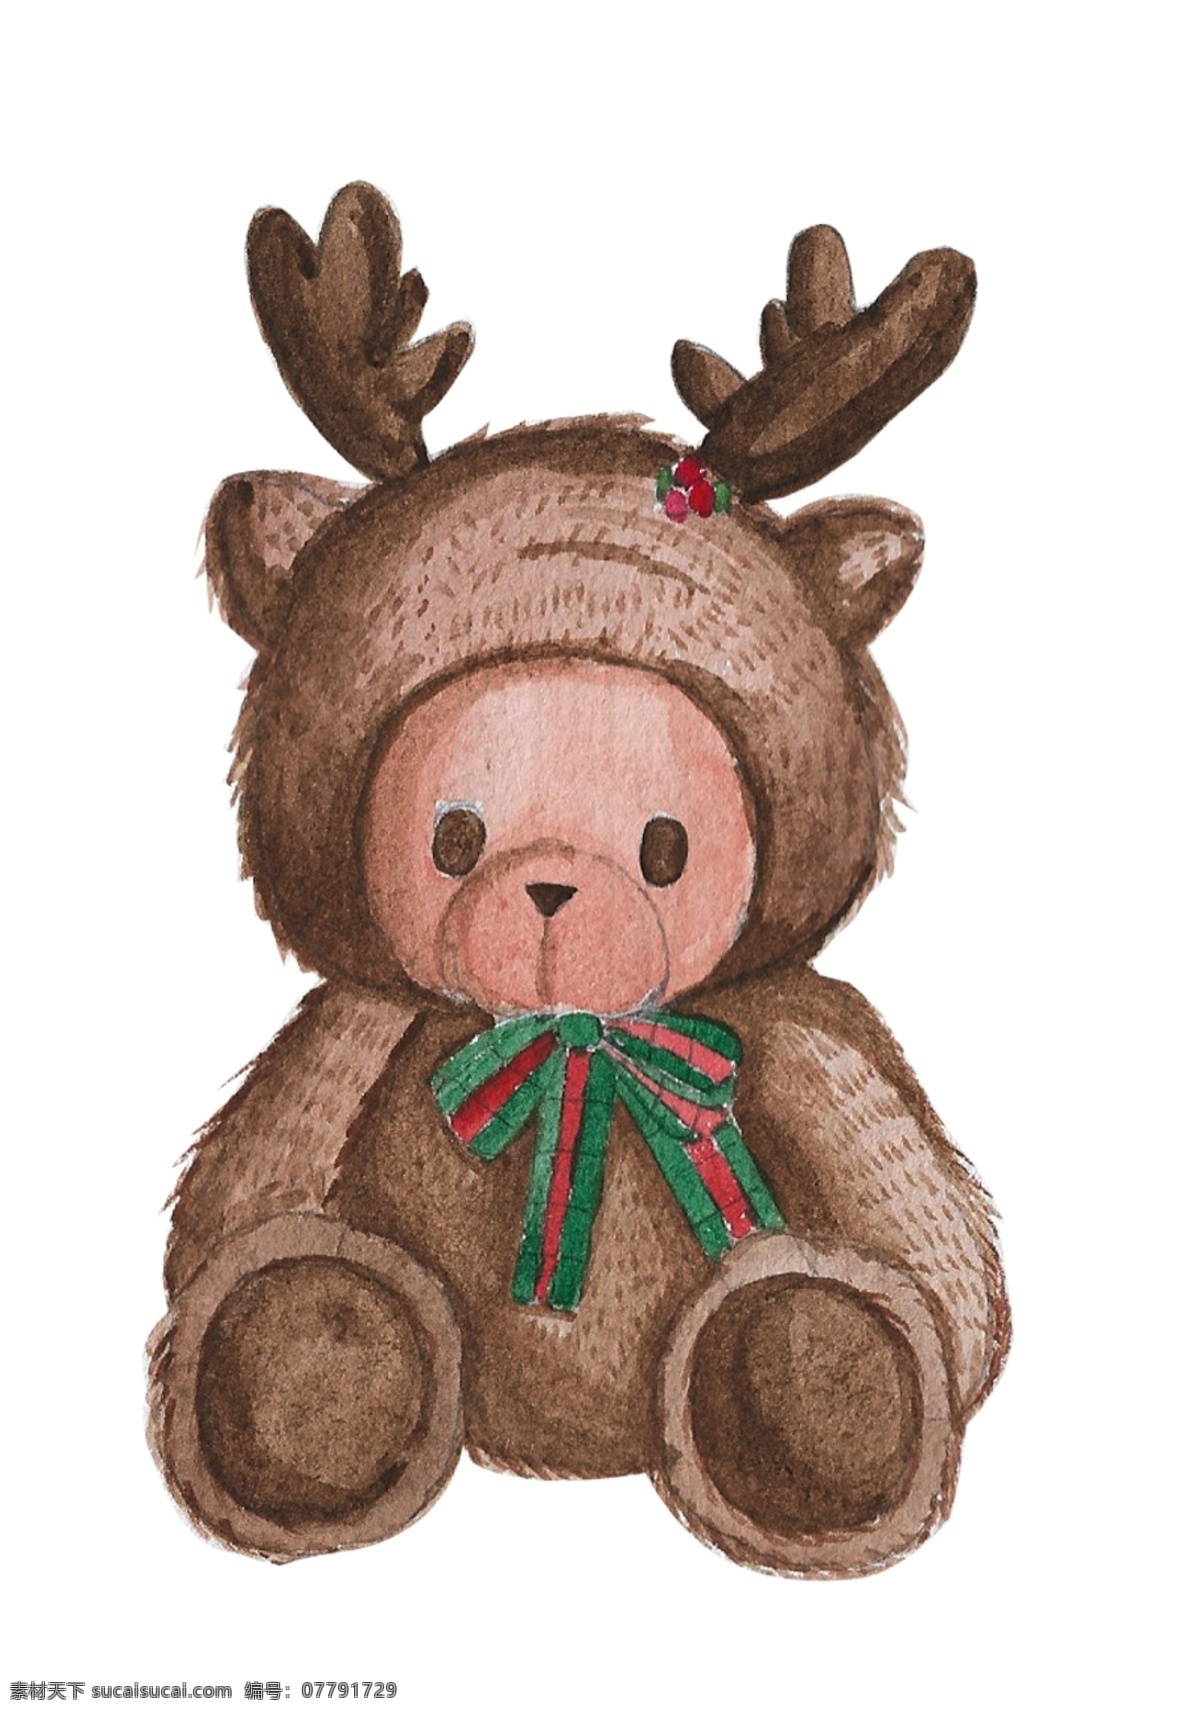 手绘 圣诞节 麋鹿 泰迪 熊 可爱 水彩 有趣 cos 泰迪熊 卡通 q版本 蝴蝶结 海报 手账